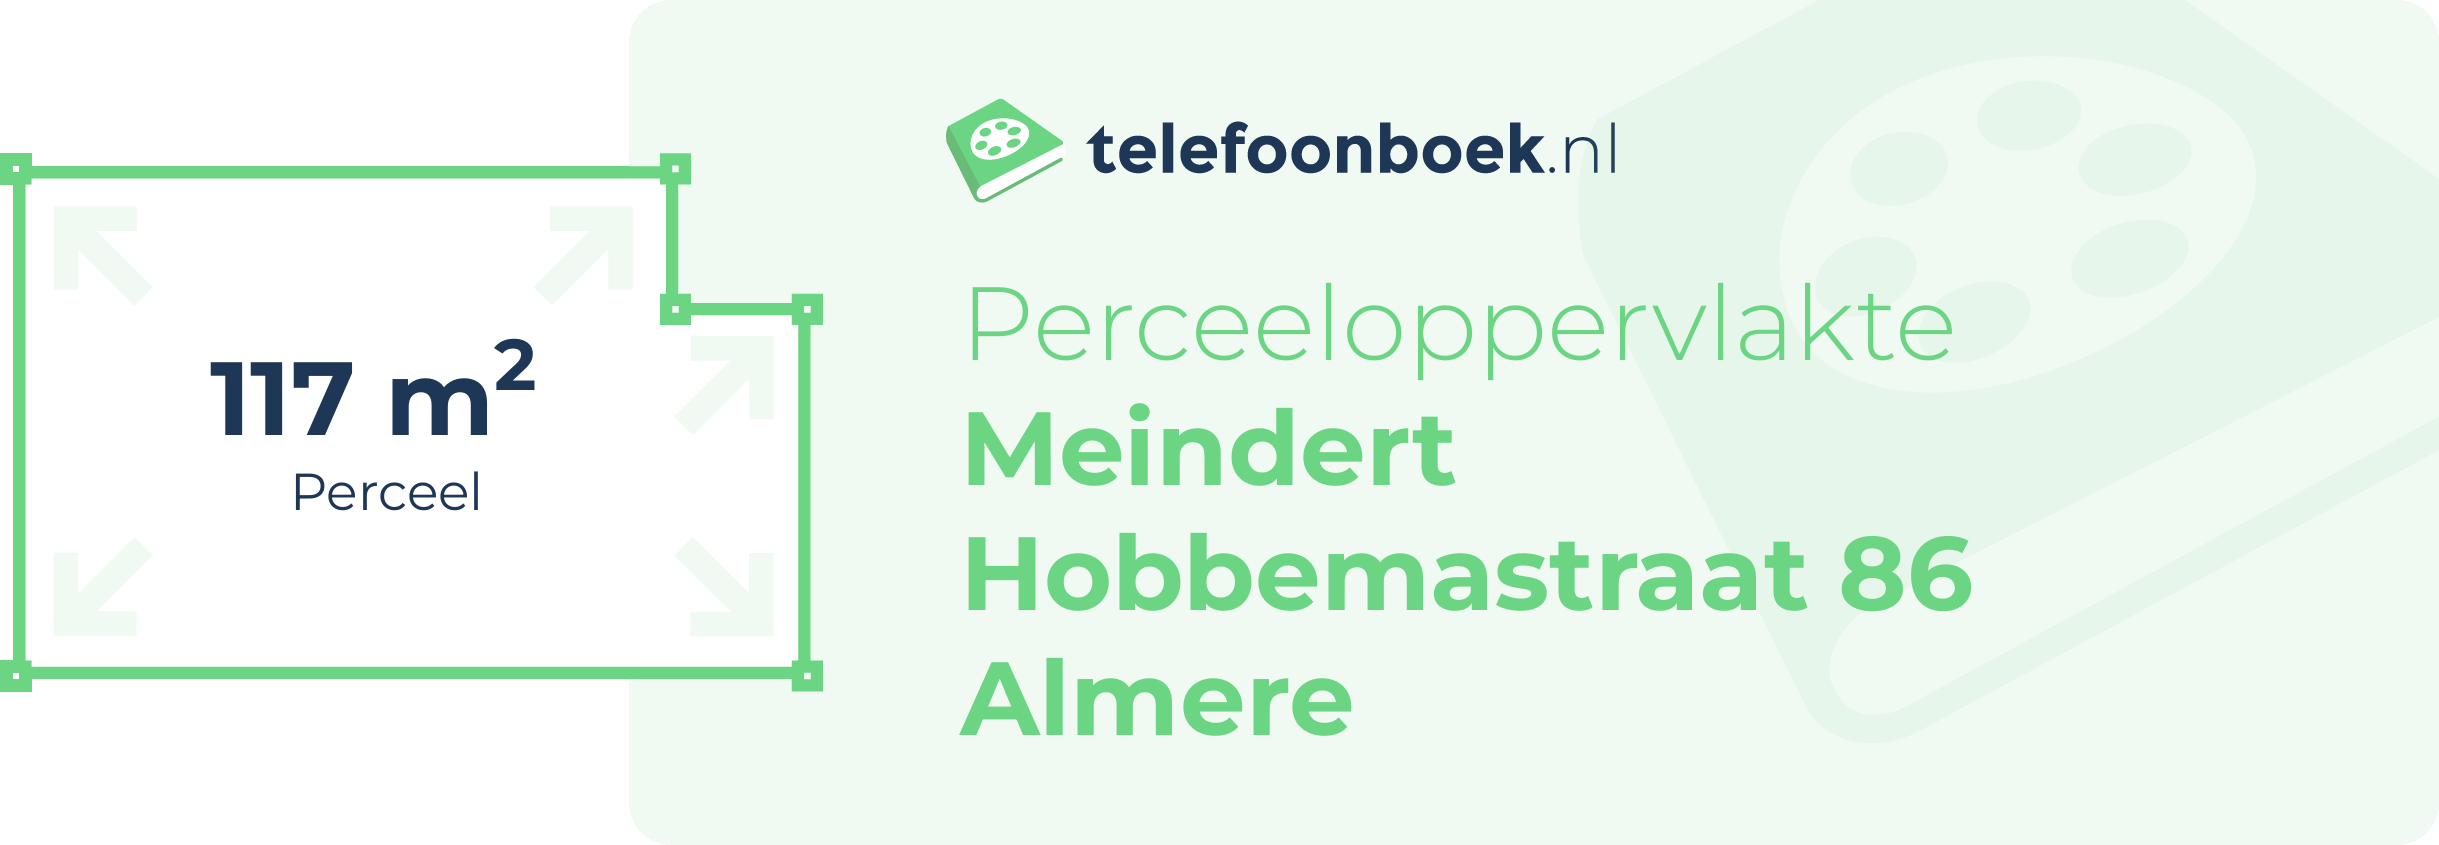 Perceeloppervlakte Meindert Hobbemastraat 86 Almere